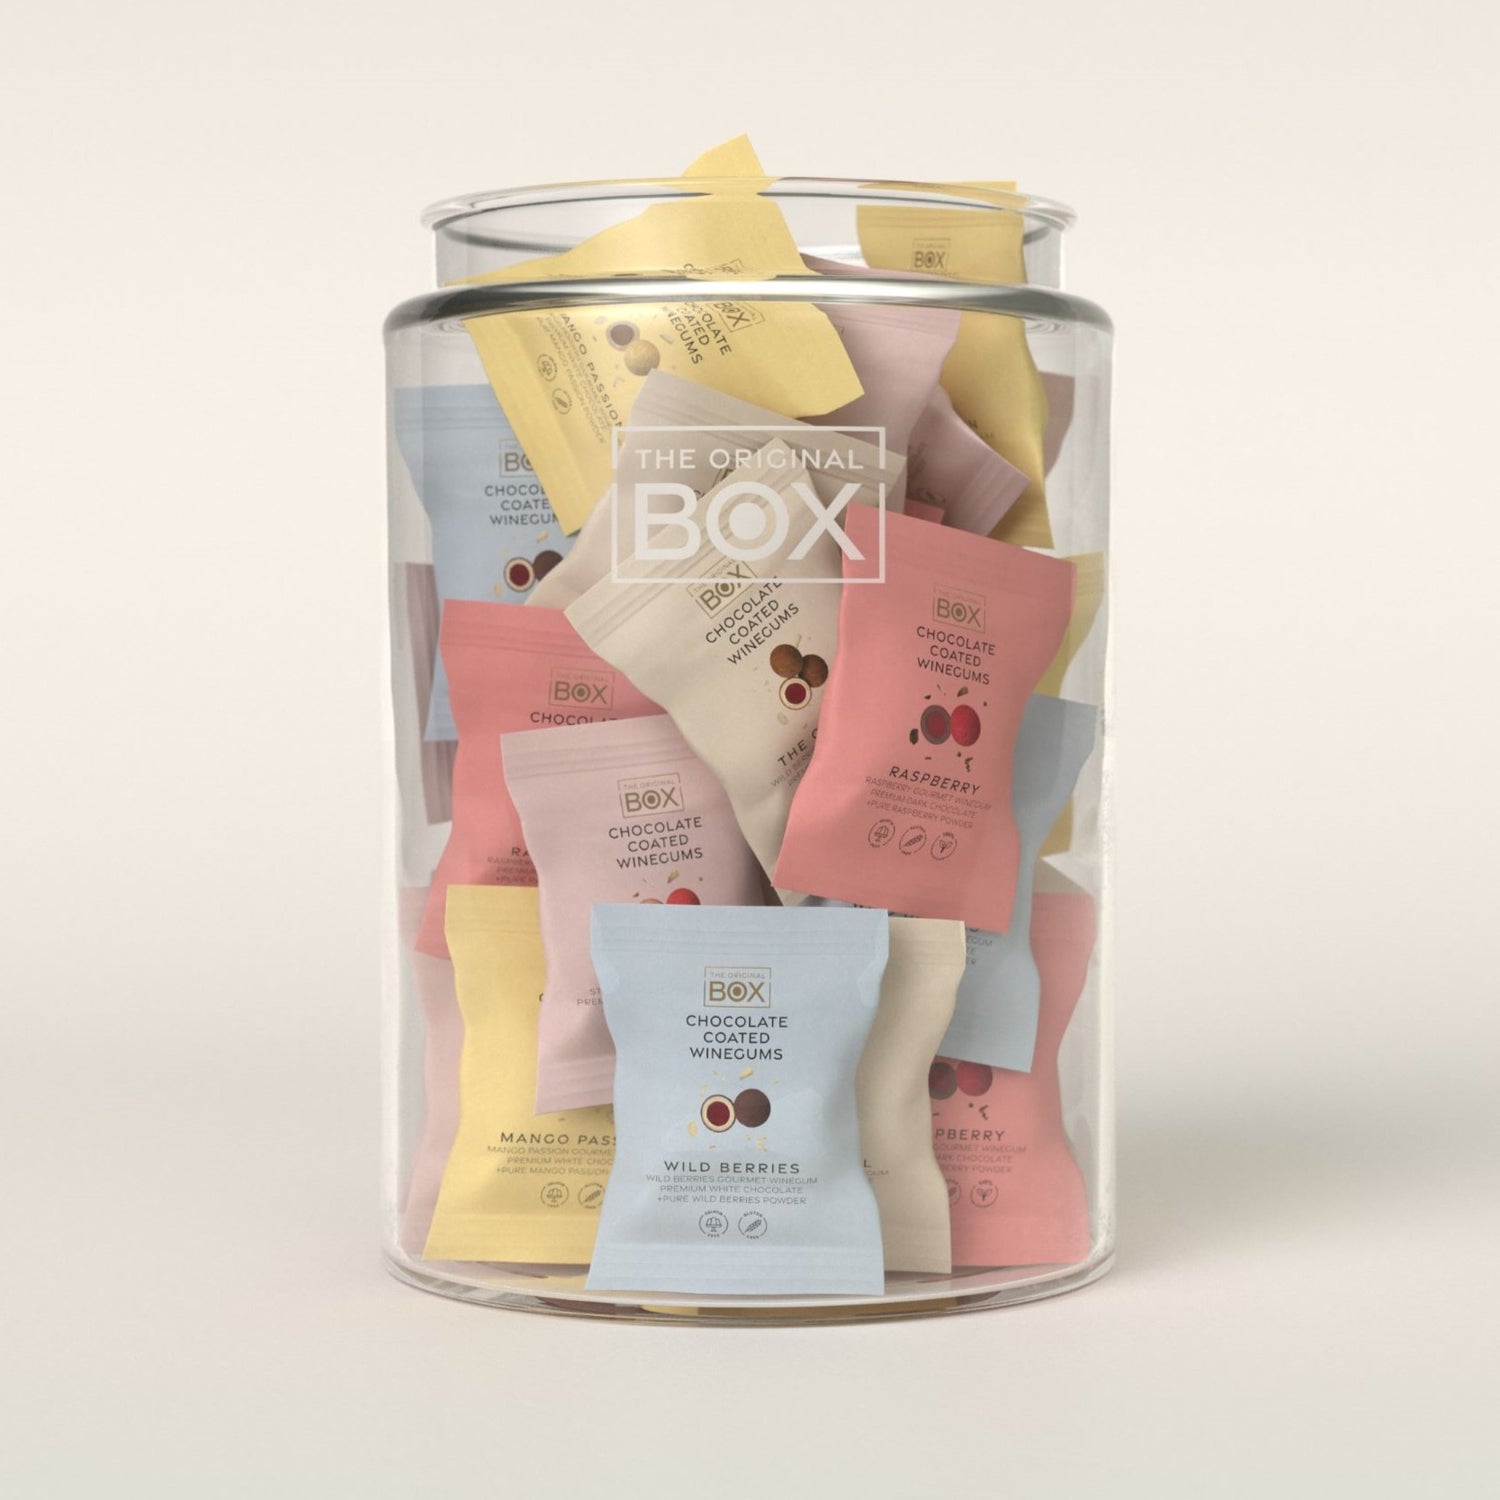 BOX - The Original